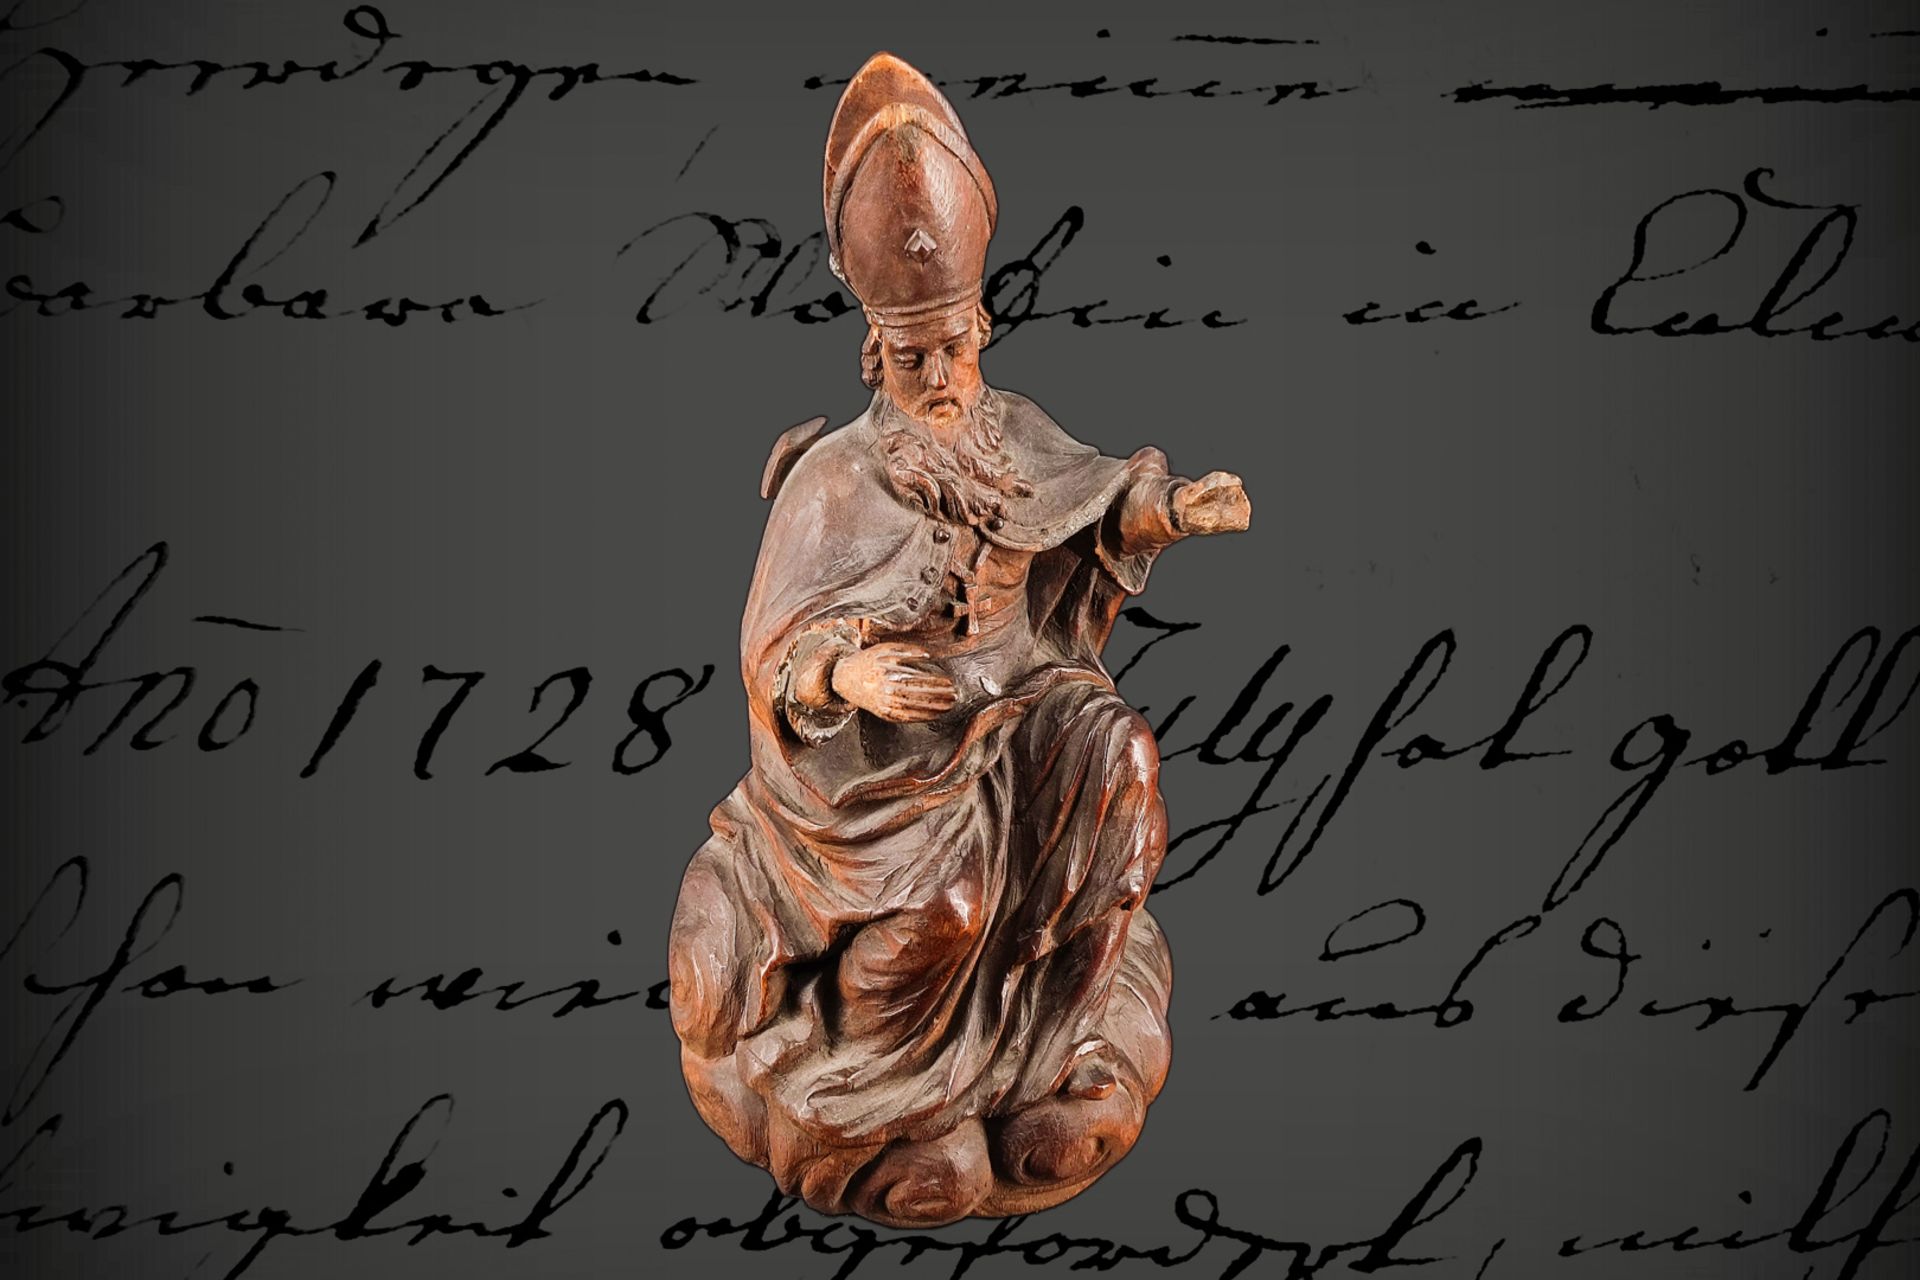 Kleine geschnitzte Heiligenfigur, 18./19. Jh.?, Bischof, Mitra und Arme geklebt, 1 Hand defekt, H 20